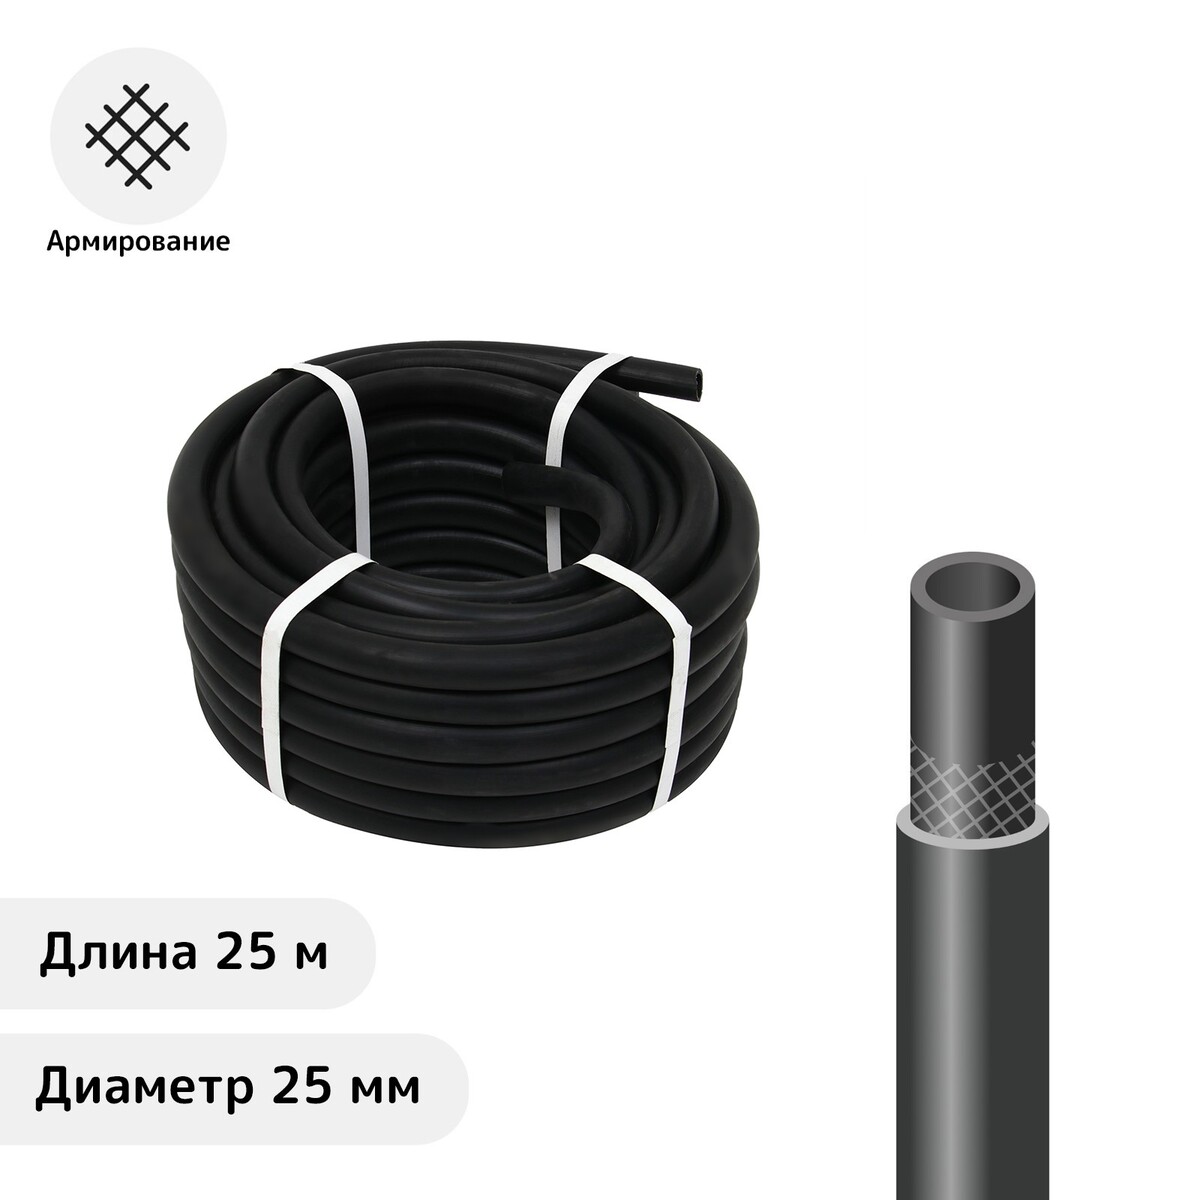 Шланг резиновый, d = 25 мм, l = 25 м, армированный, черный, No brand